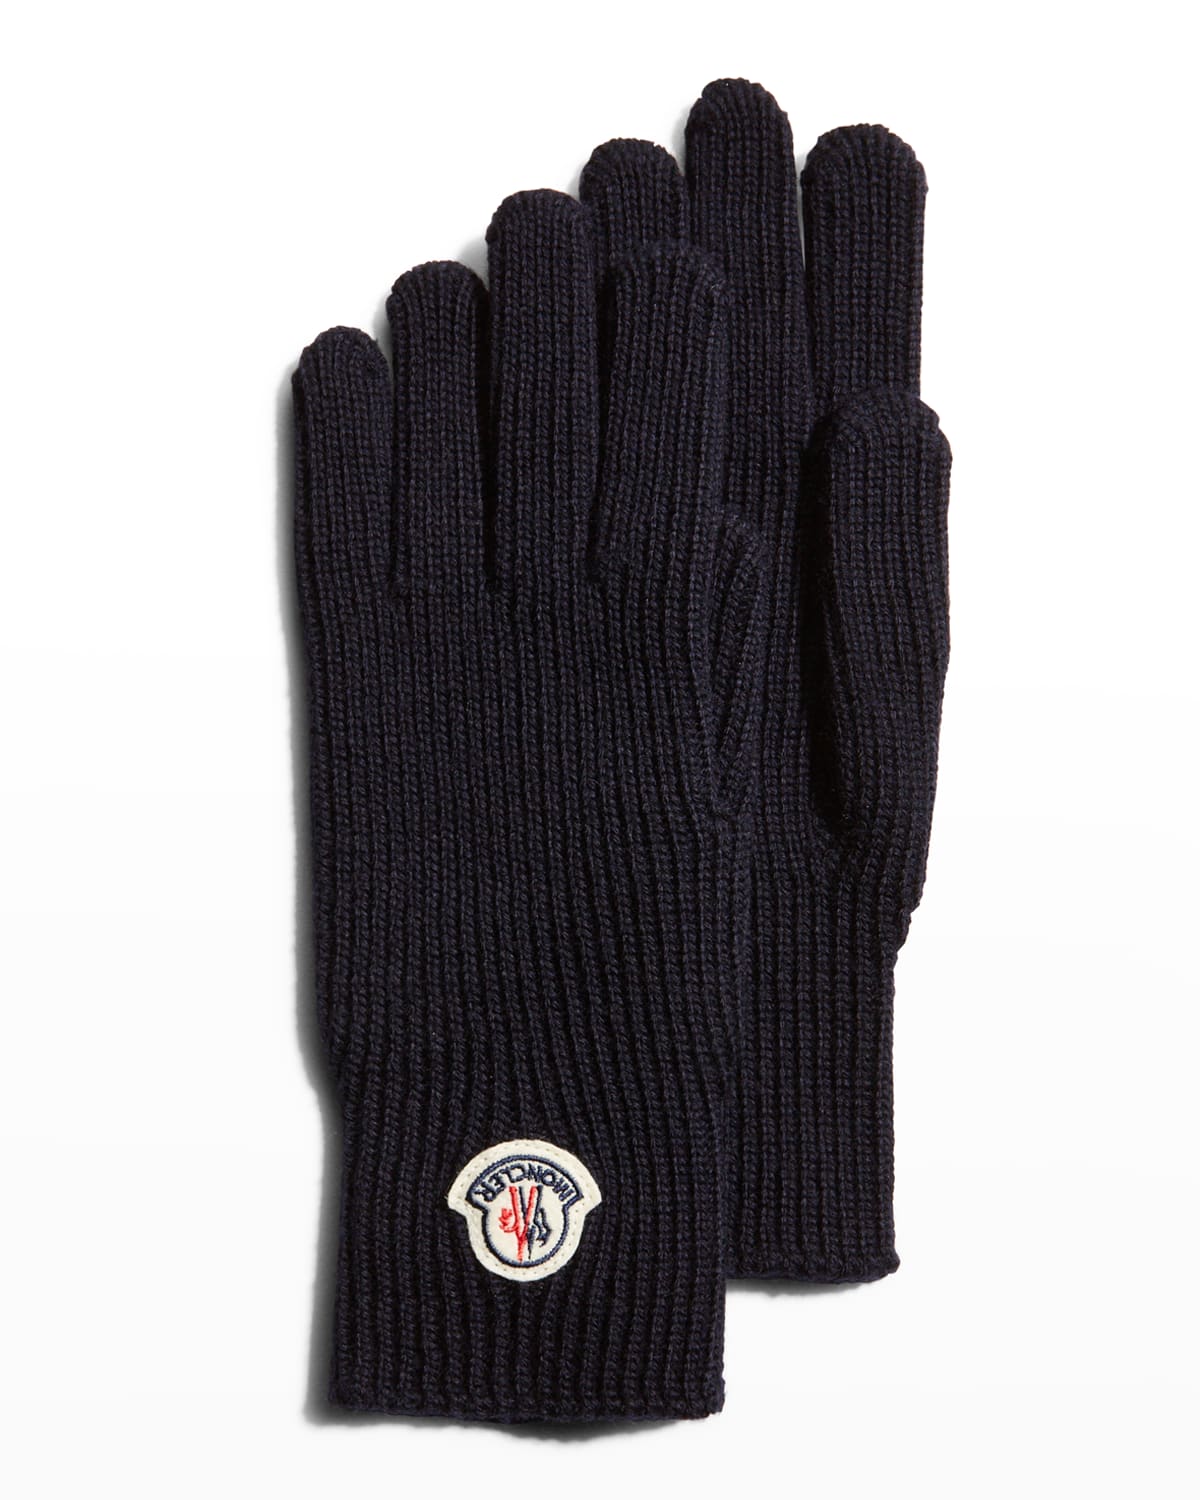 Men's Wool Gloves w/ Logo Patch